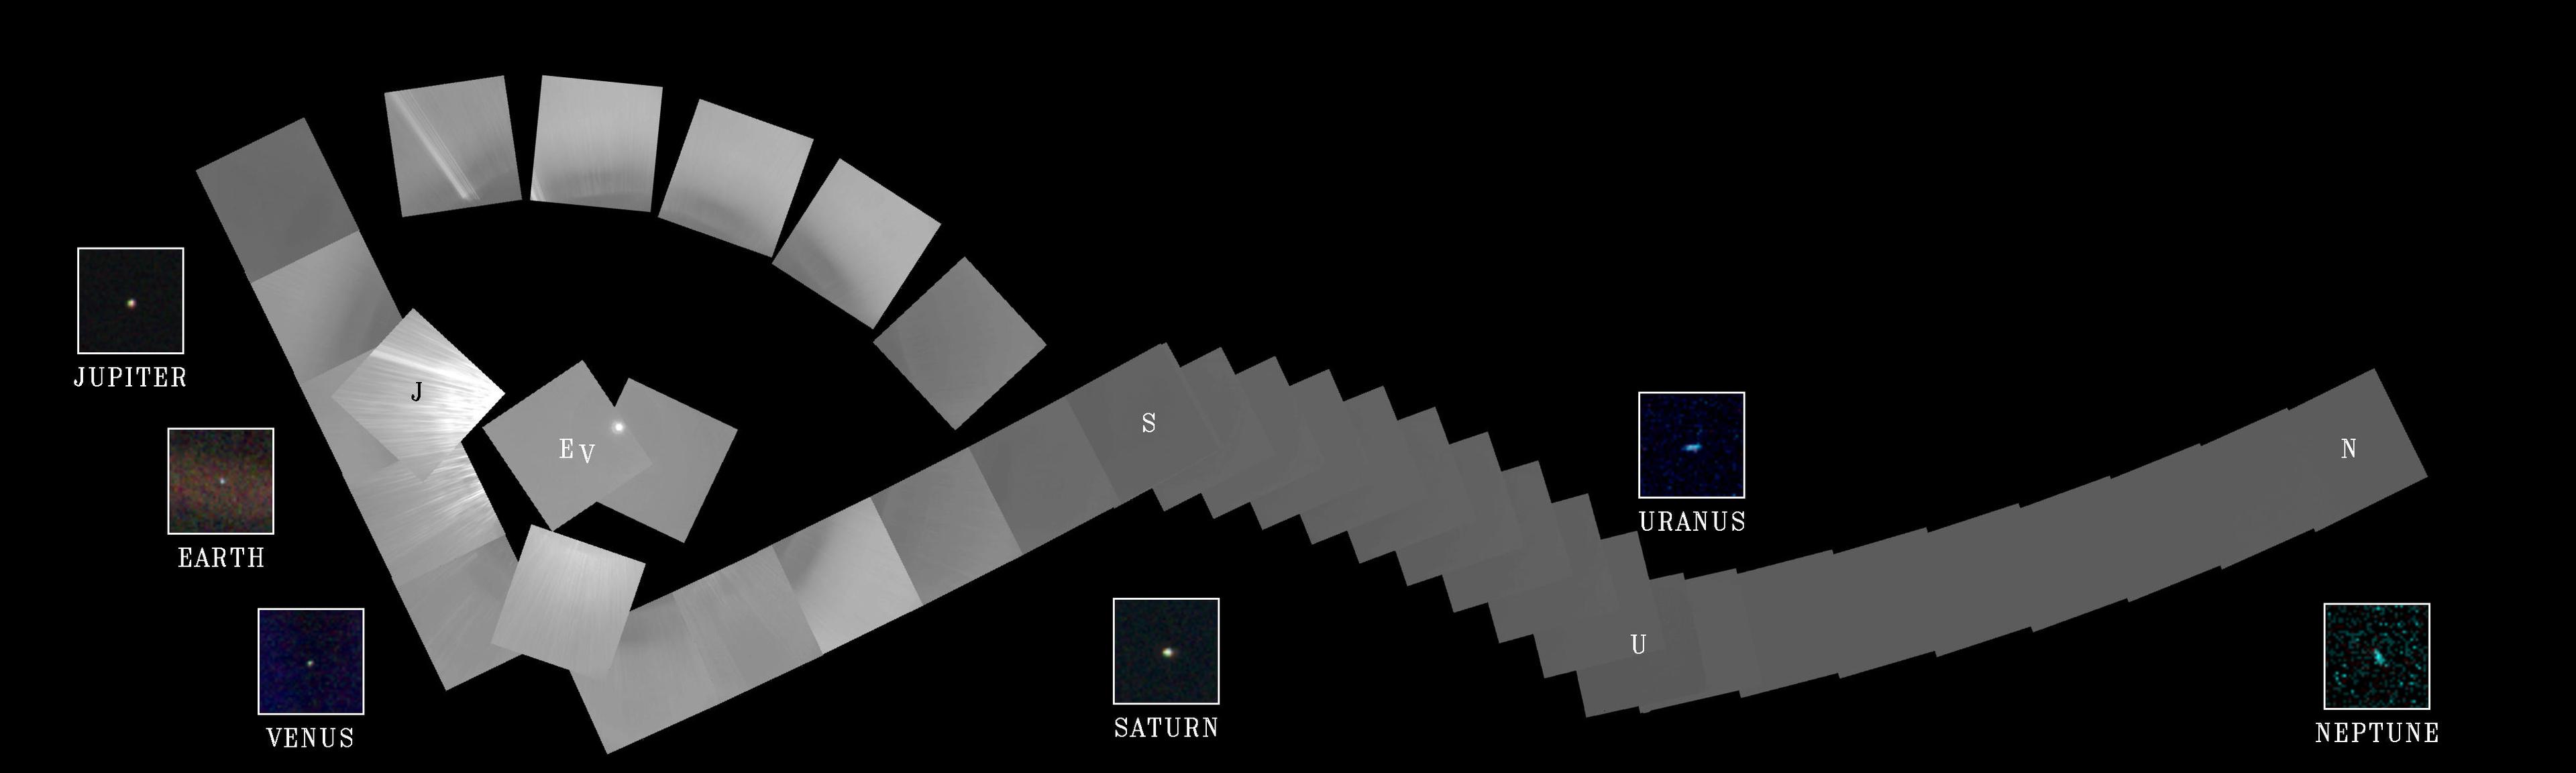 صورة مُركَّبة من 60 إطاراً التقطتها مركبة ڤويَجر 1 للمجموعة الشمسية الداخلية تظهر فيها معظم كواكبها بالإضافة للشمس لتغدو بمثابة صورة عائليّة للمجموعة الشمسيّة.